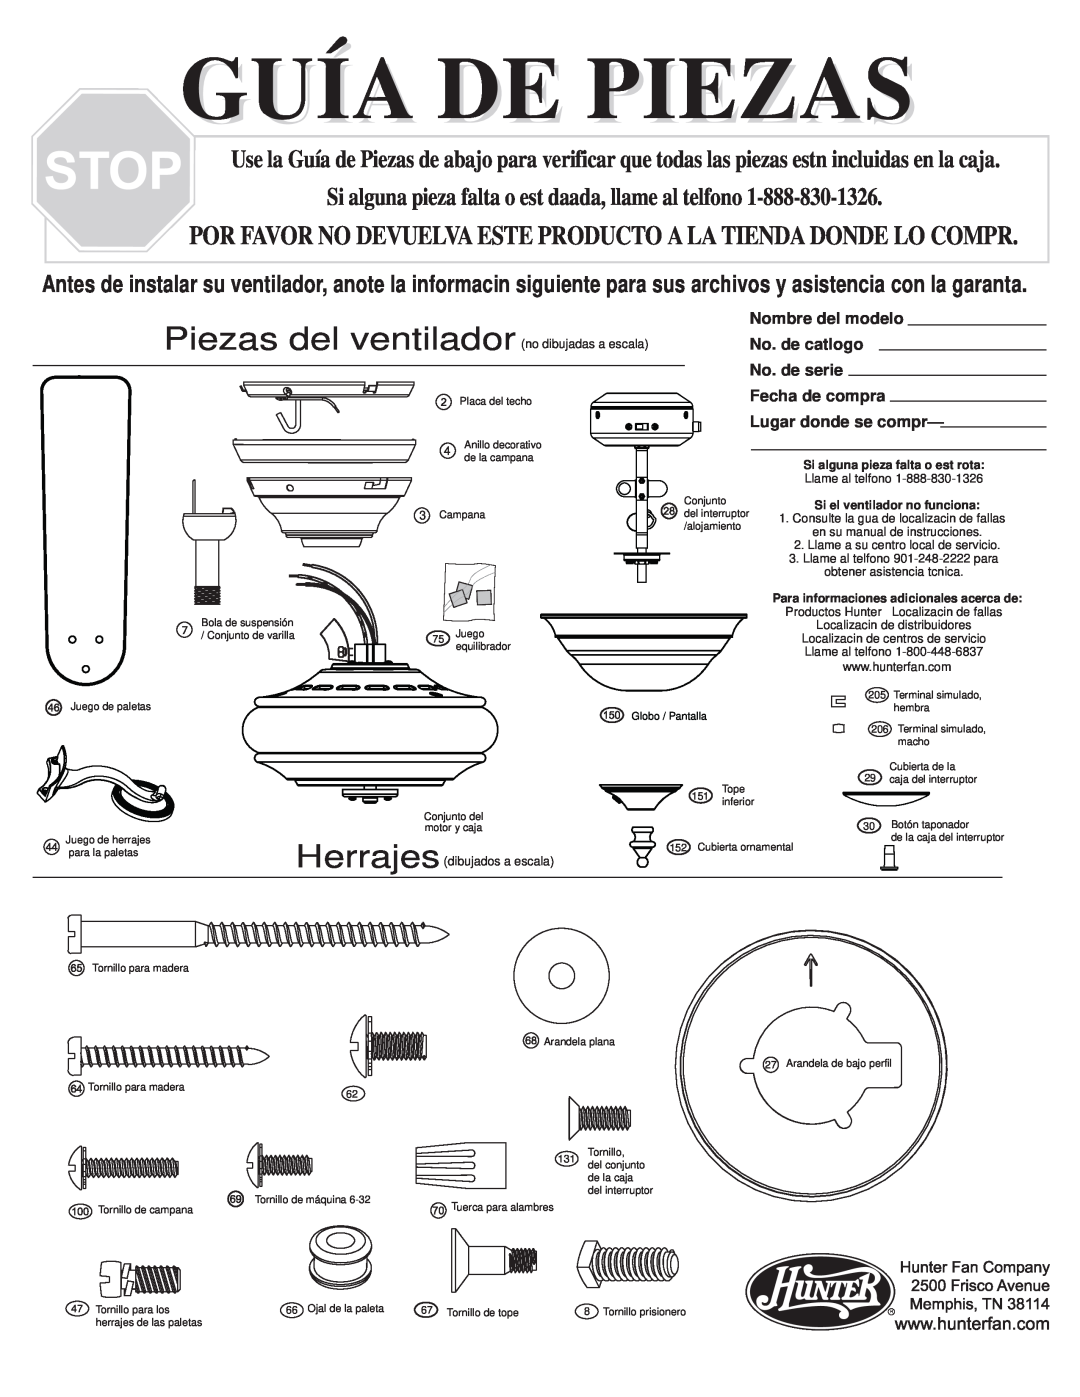 Hunter Fan 20551 warranty Guía De Piezas, Herrajes, Si alguna pieza falta o est rota, Si el ventilador no funciona 